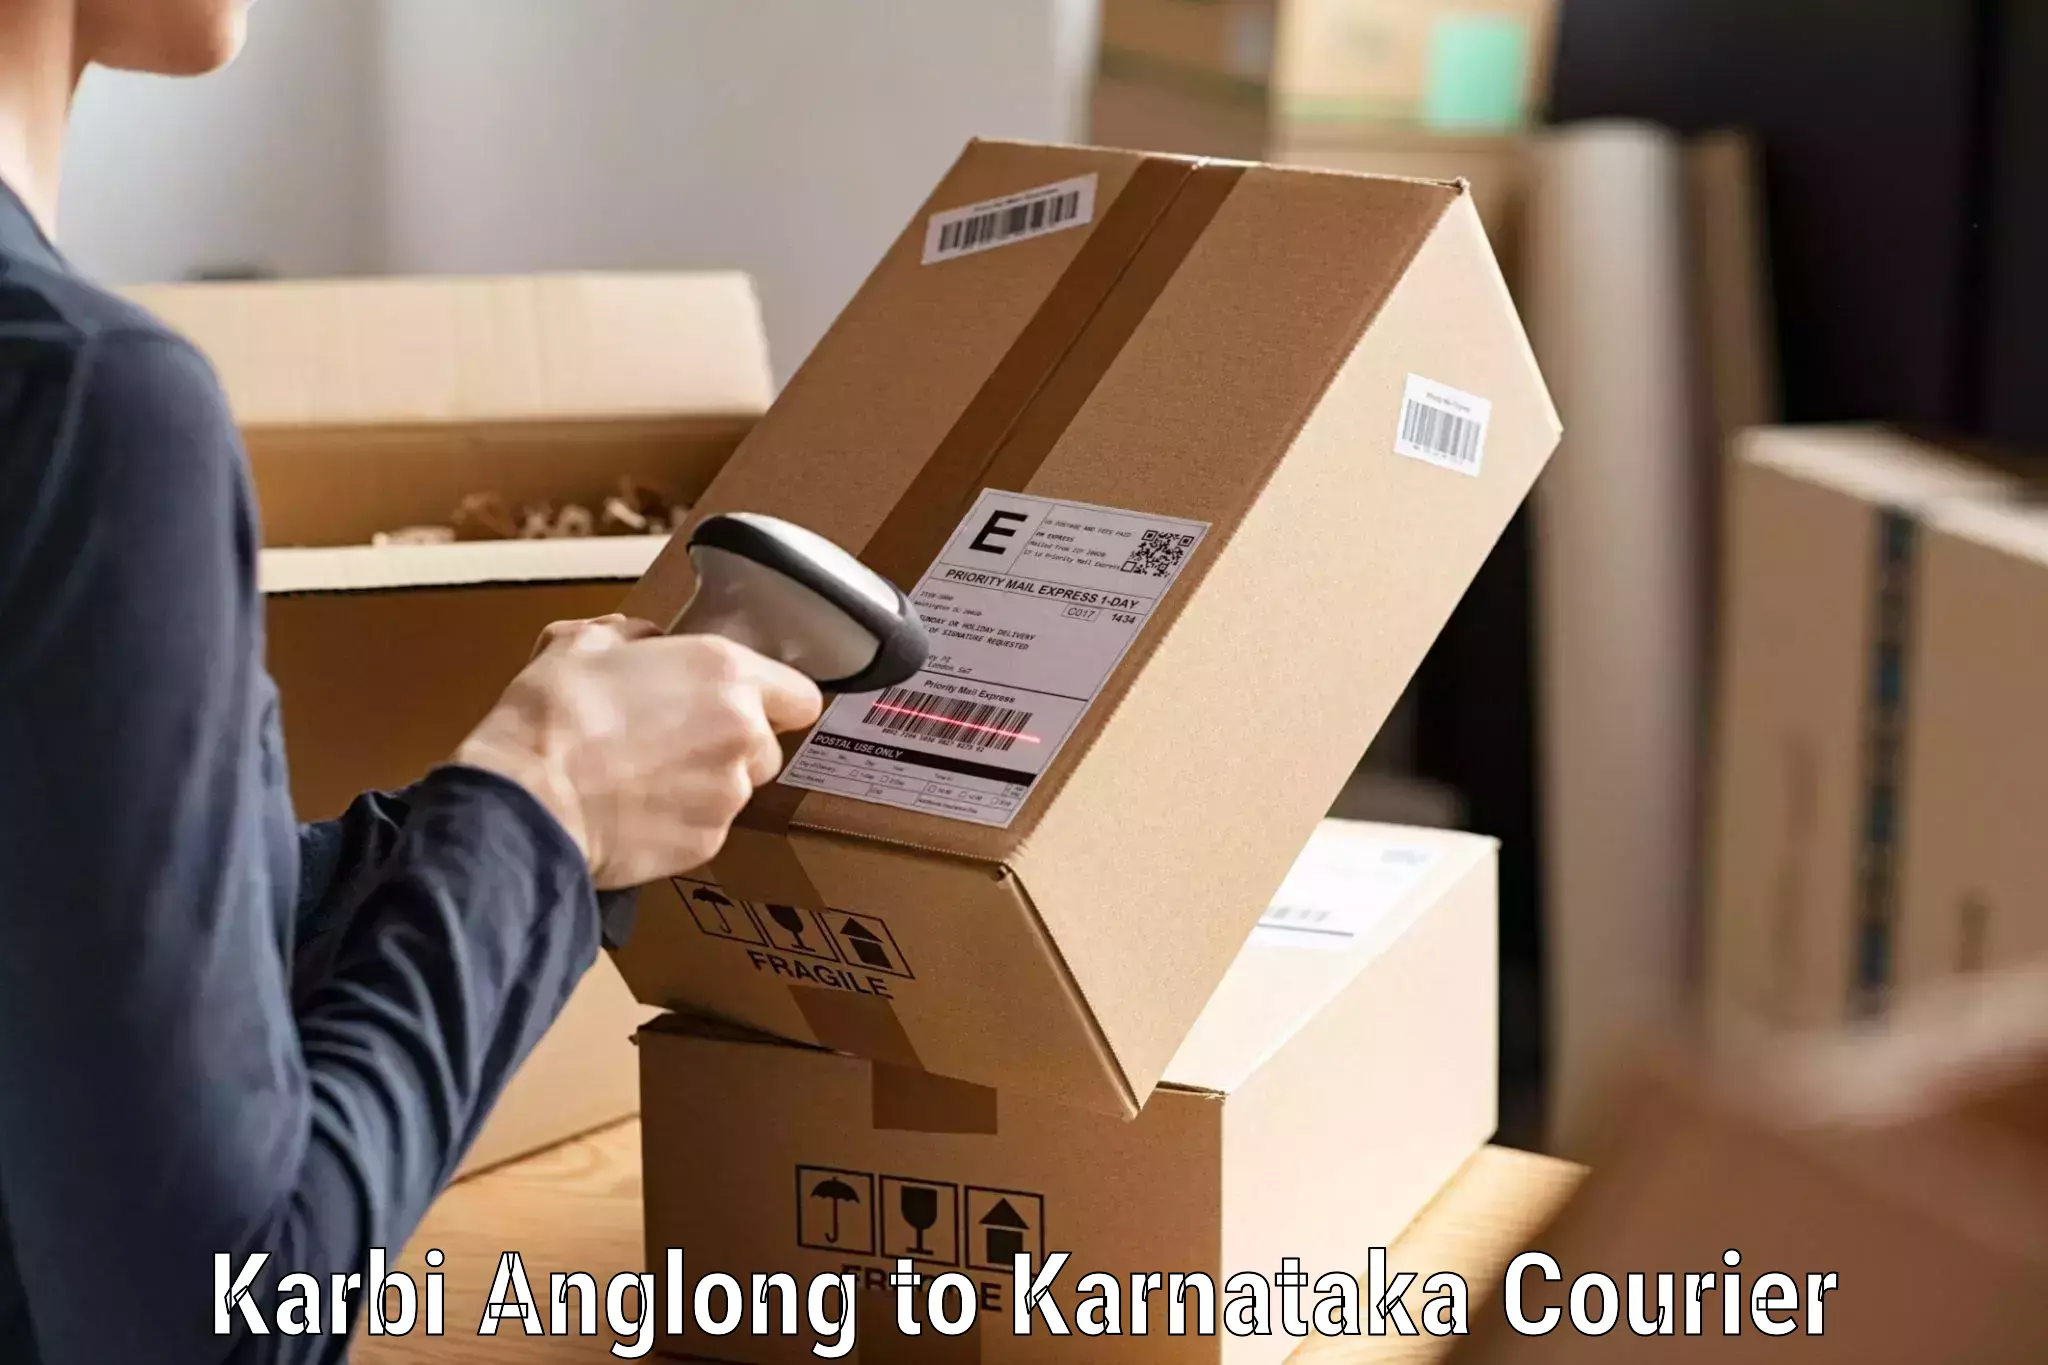 Express package handling Karbi Anglong to Panja Dakshin Kannad